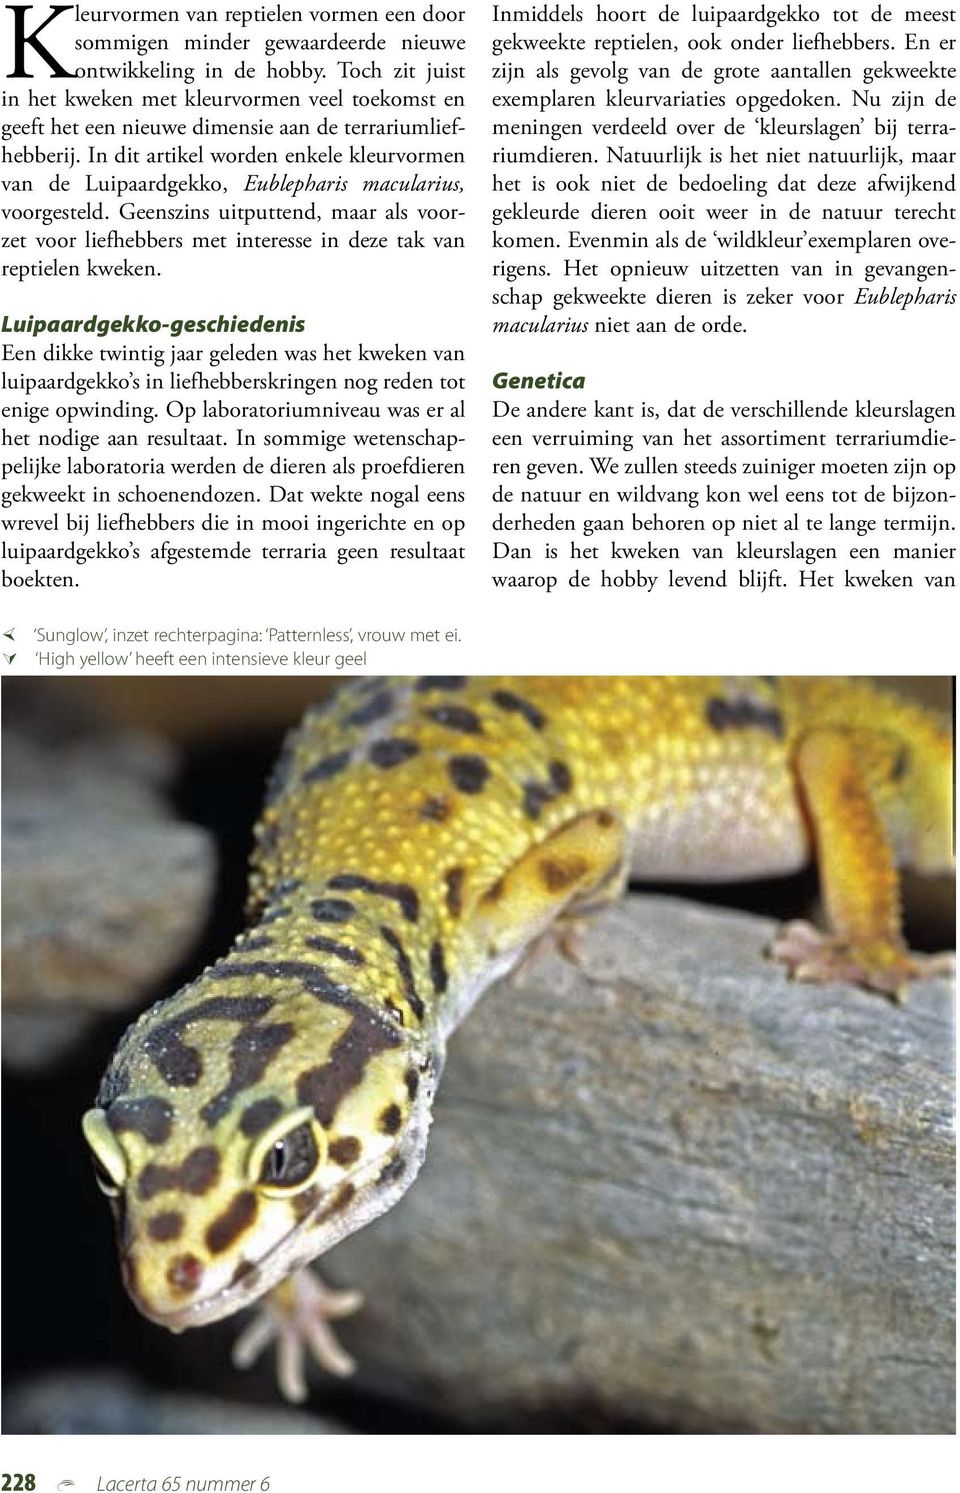 In dit artikel worden enkele kleurvormen van de Luipaardgekko, Eublepharis macularius, voorgesteld.